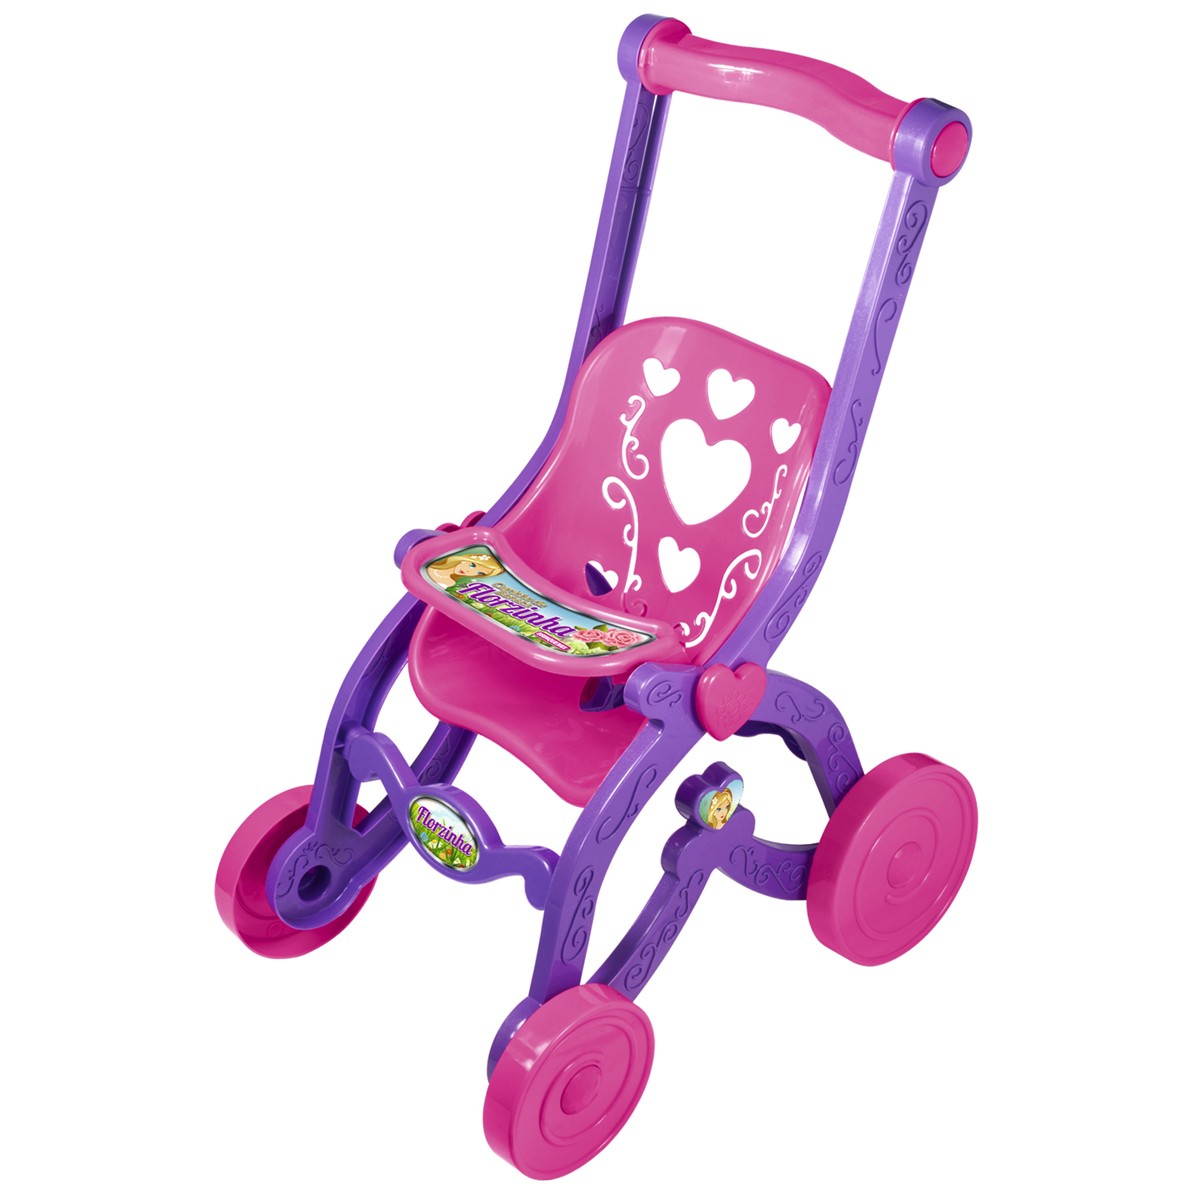 Brinquedo infantil carrinho de boneca florzinha rosa com lilas desmontado brinquemix - cdb05010-CDB05010-25651